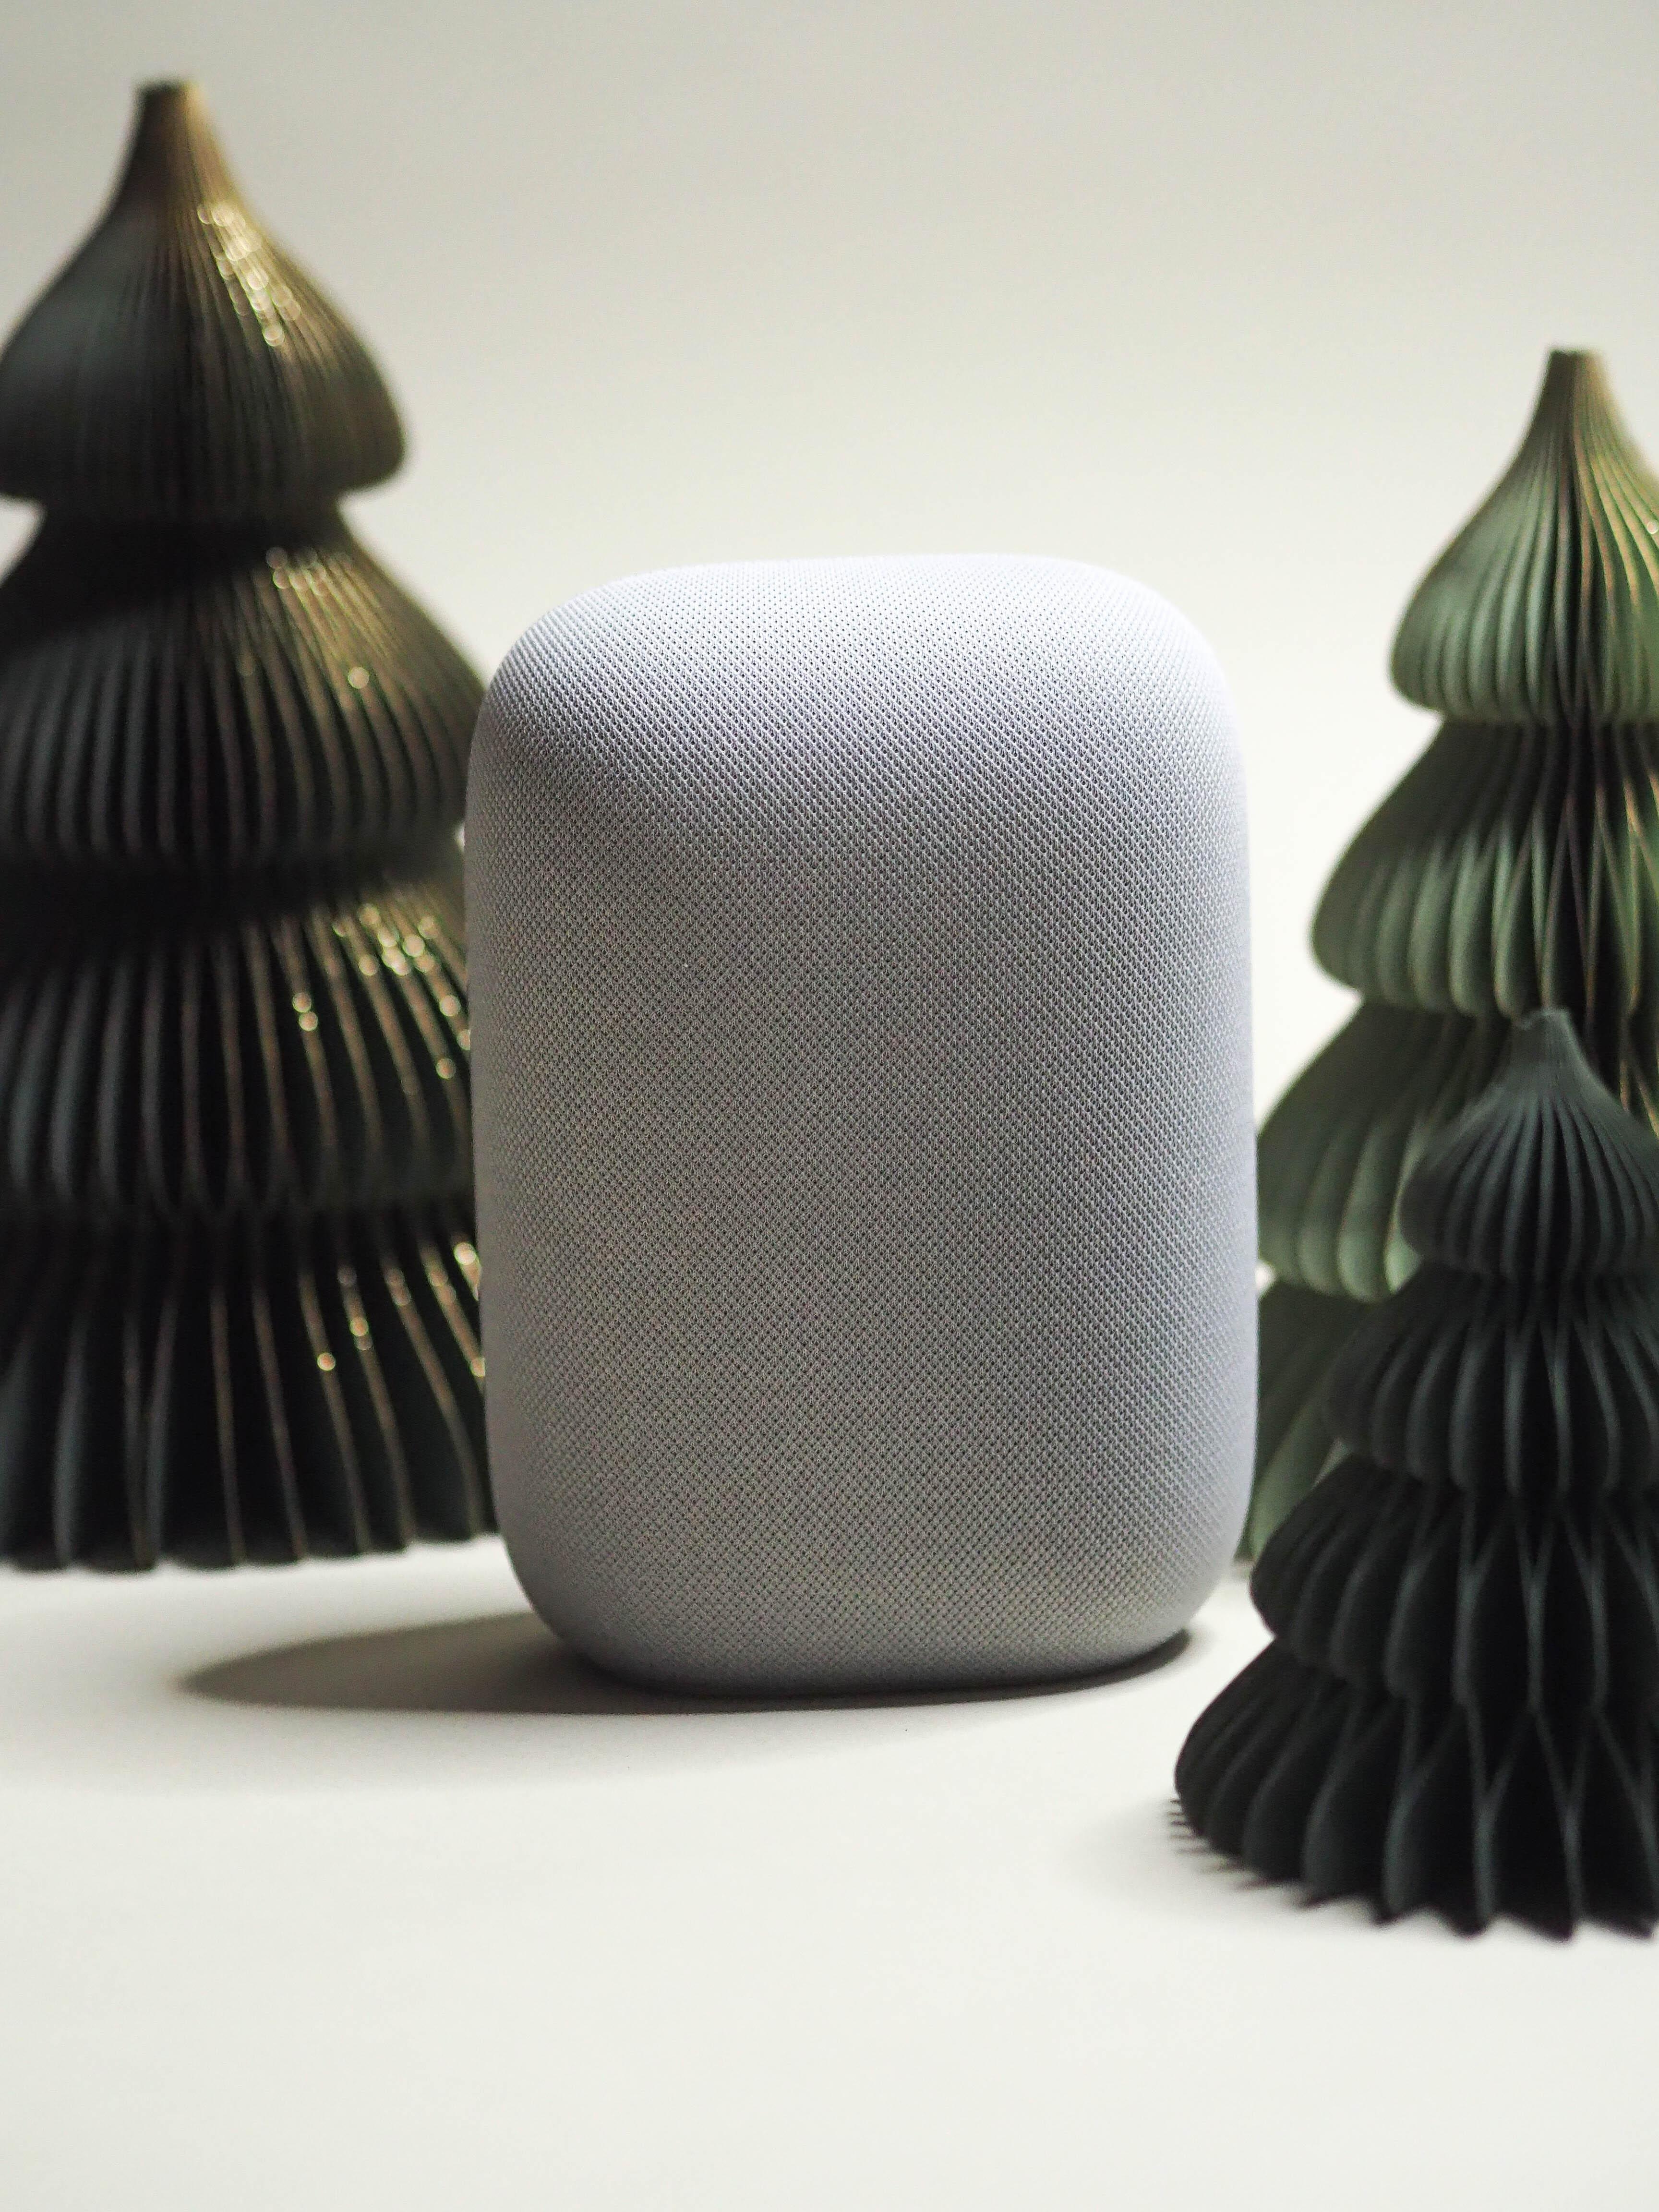 Zukunft-Zuhause: Mit dem #Google Audio Nest Speaker kommen Sound-Checker auf ihre Kosten. #geschenkideen 